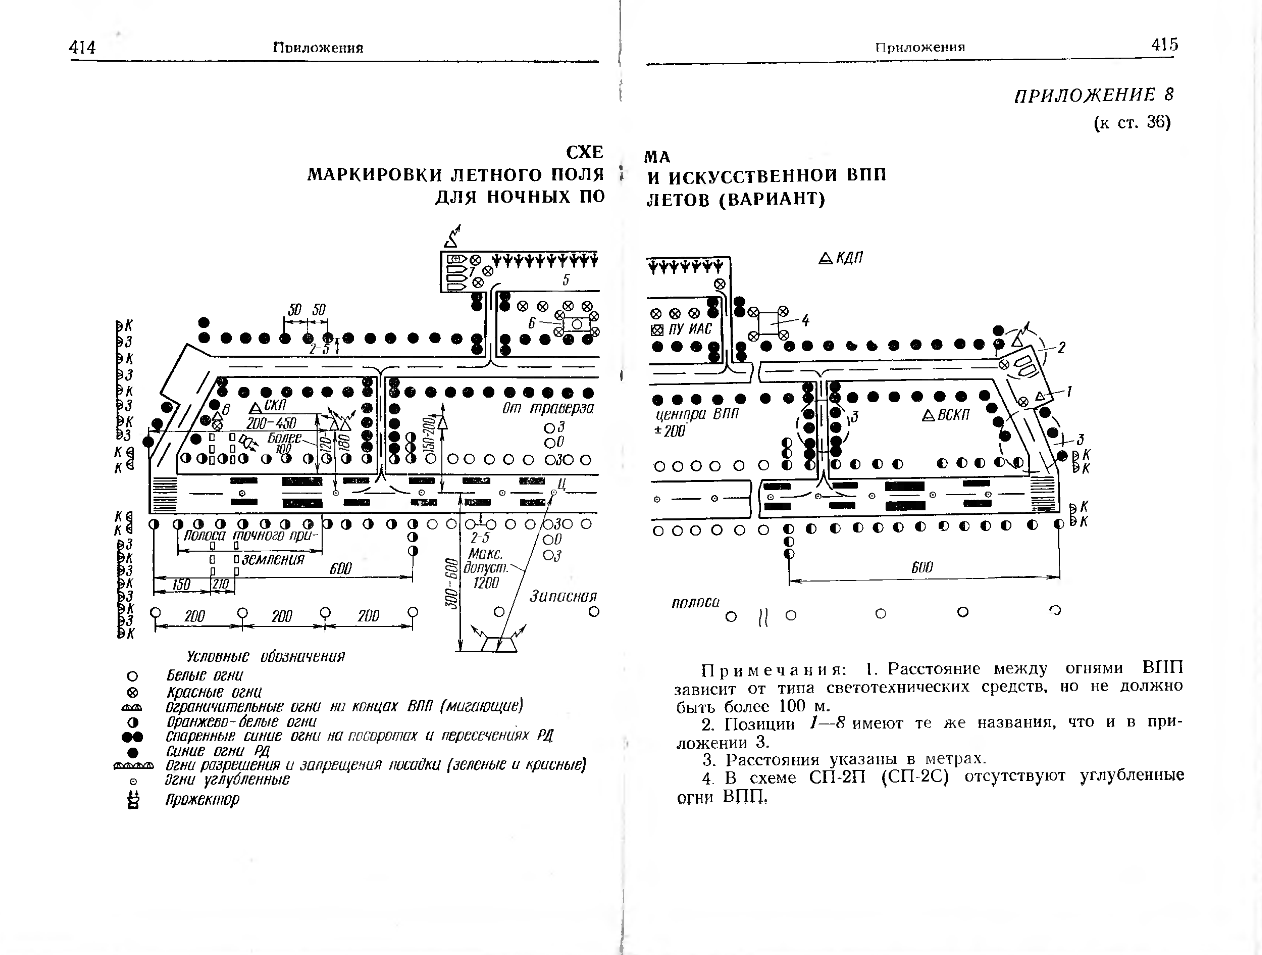 Наставление по производству полетов авиации Вооруженных Сил СССР. НПП-78. 1978